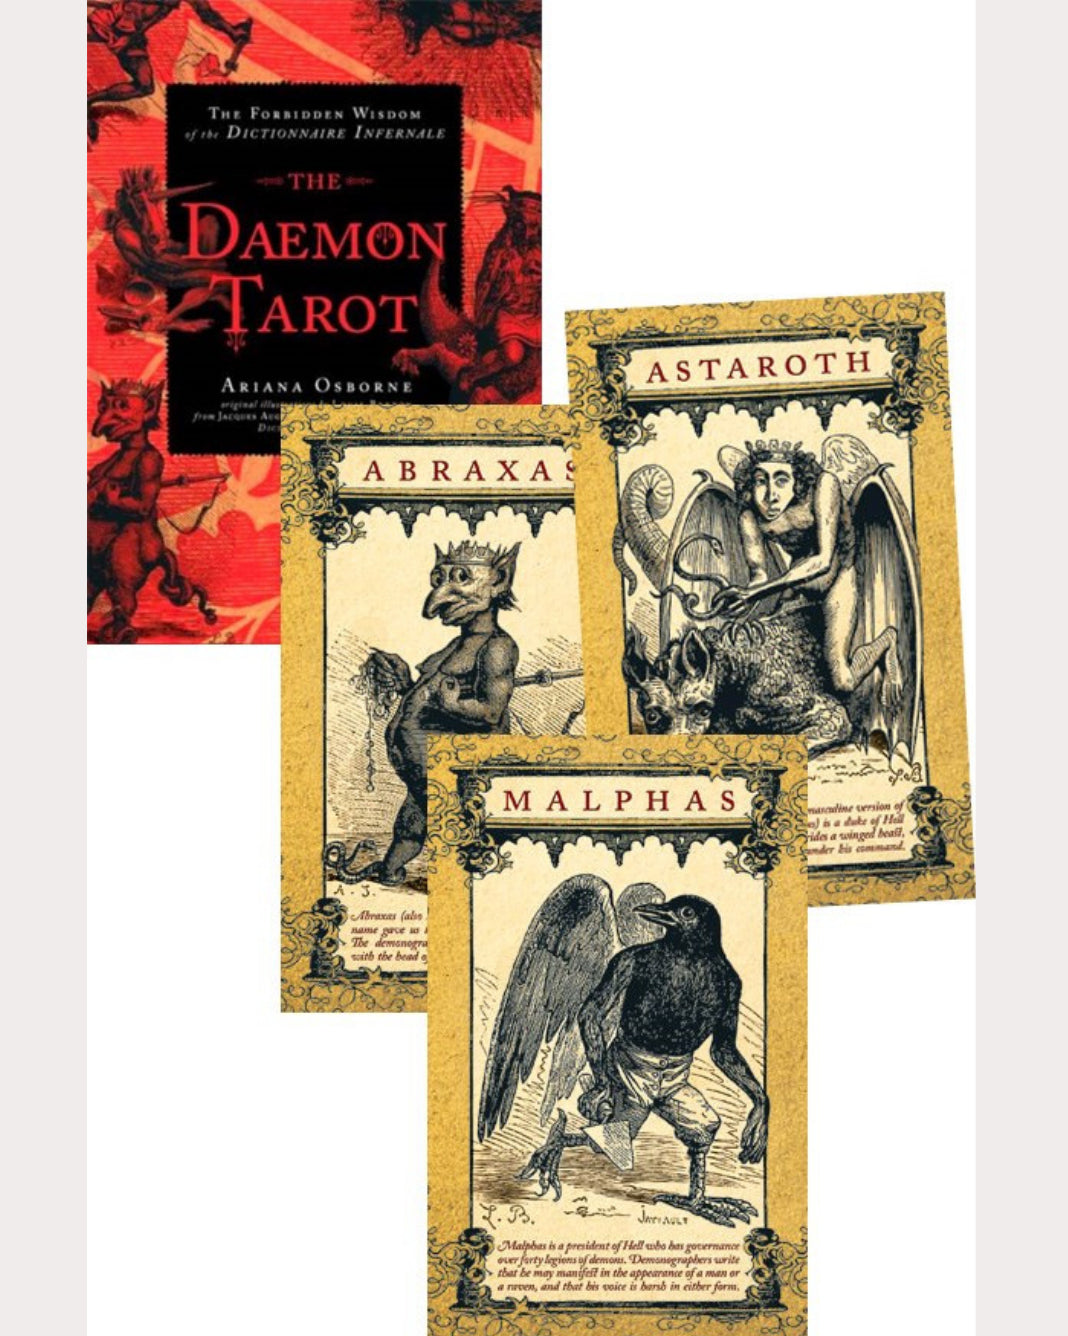 The Daemon Tarot